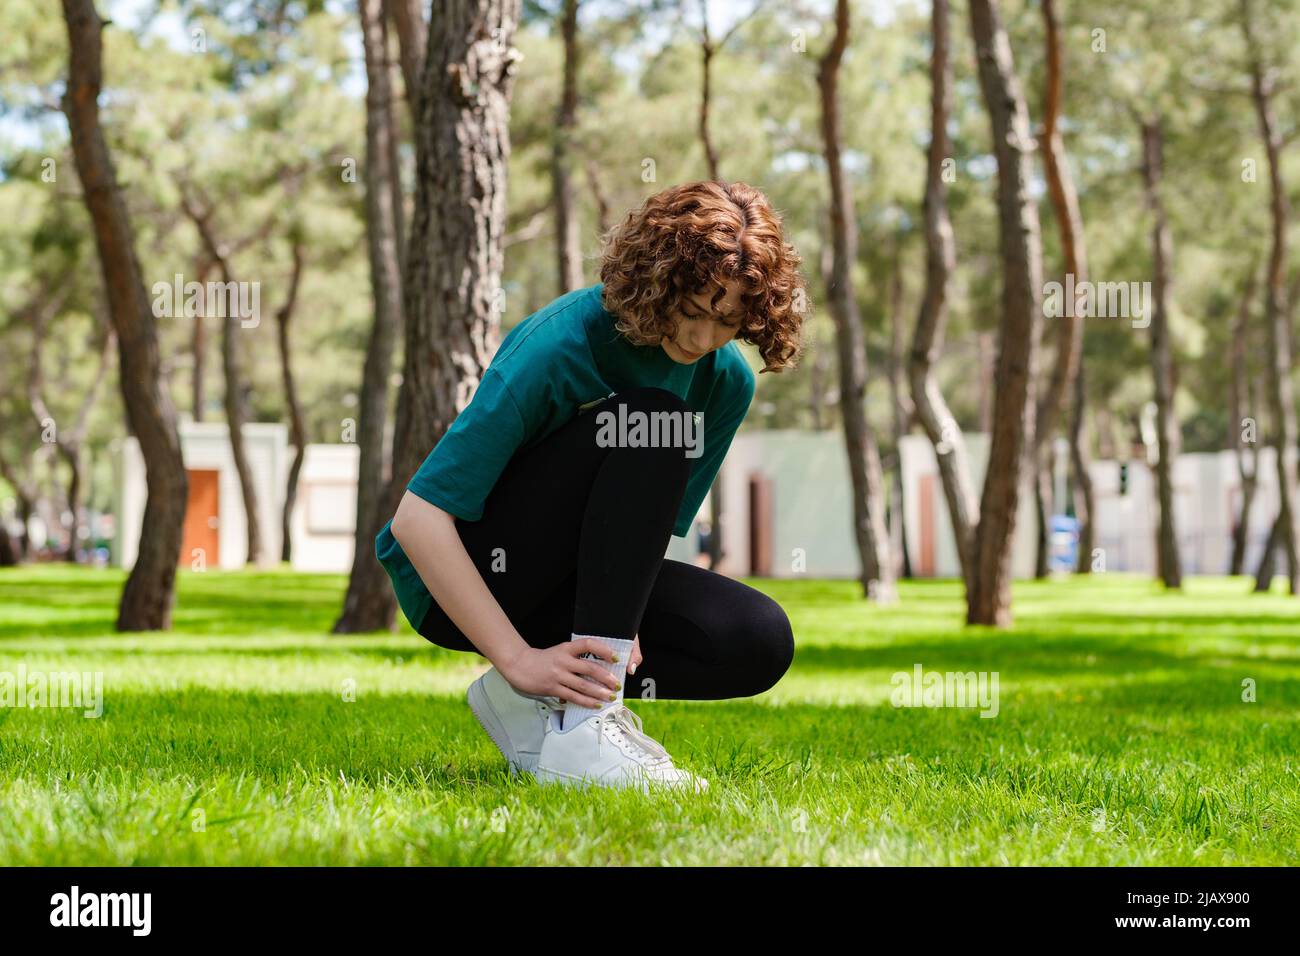 Giovane donna rossa che indossa una t-shirt verde e leggings neri che soffrono di una lesione alla caviglia durante l'esercizio e la corsa. Concetto di salute e sport Foto Stock